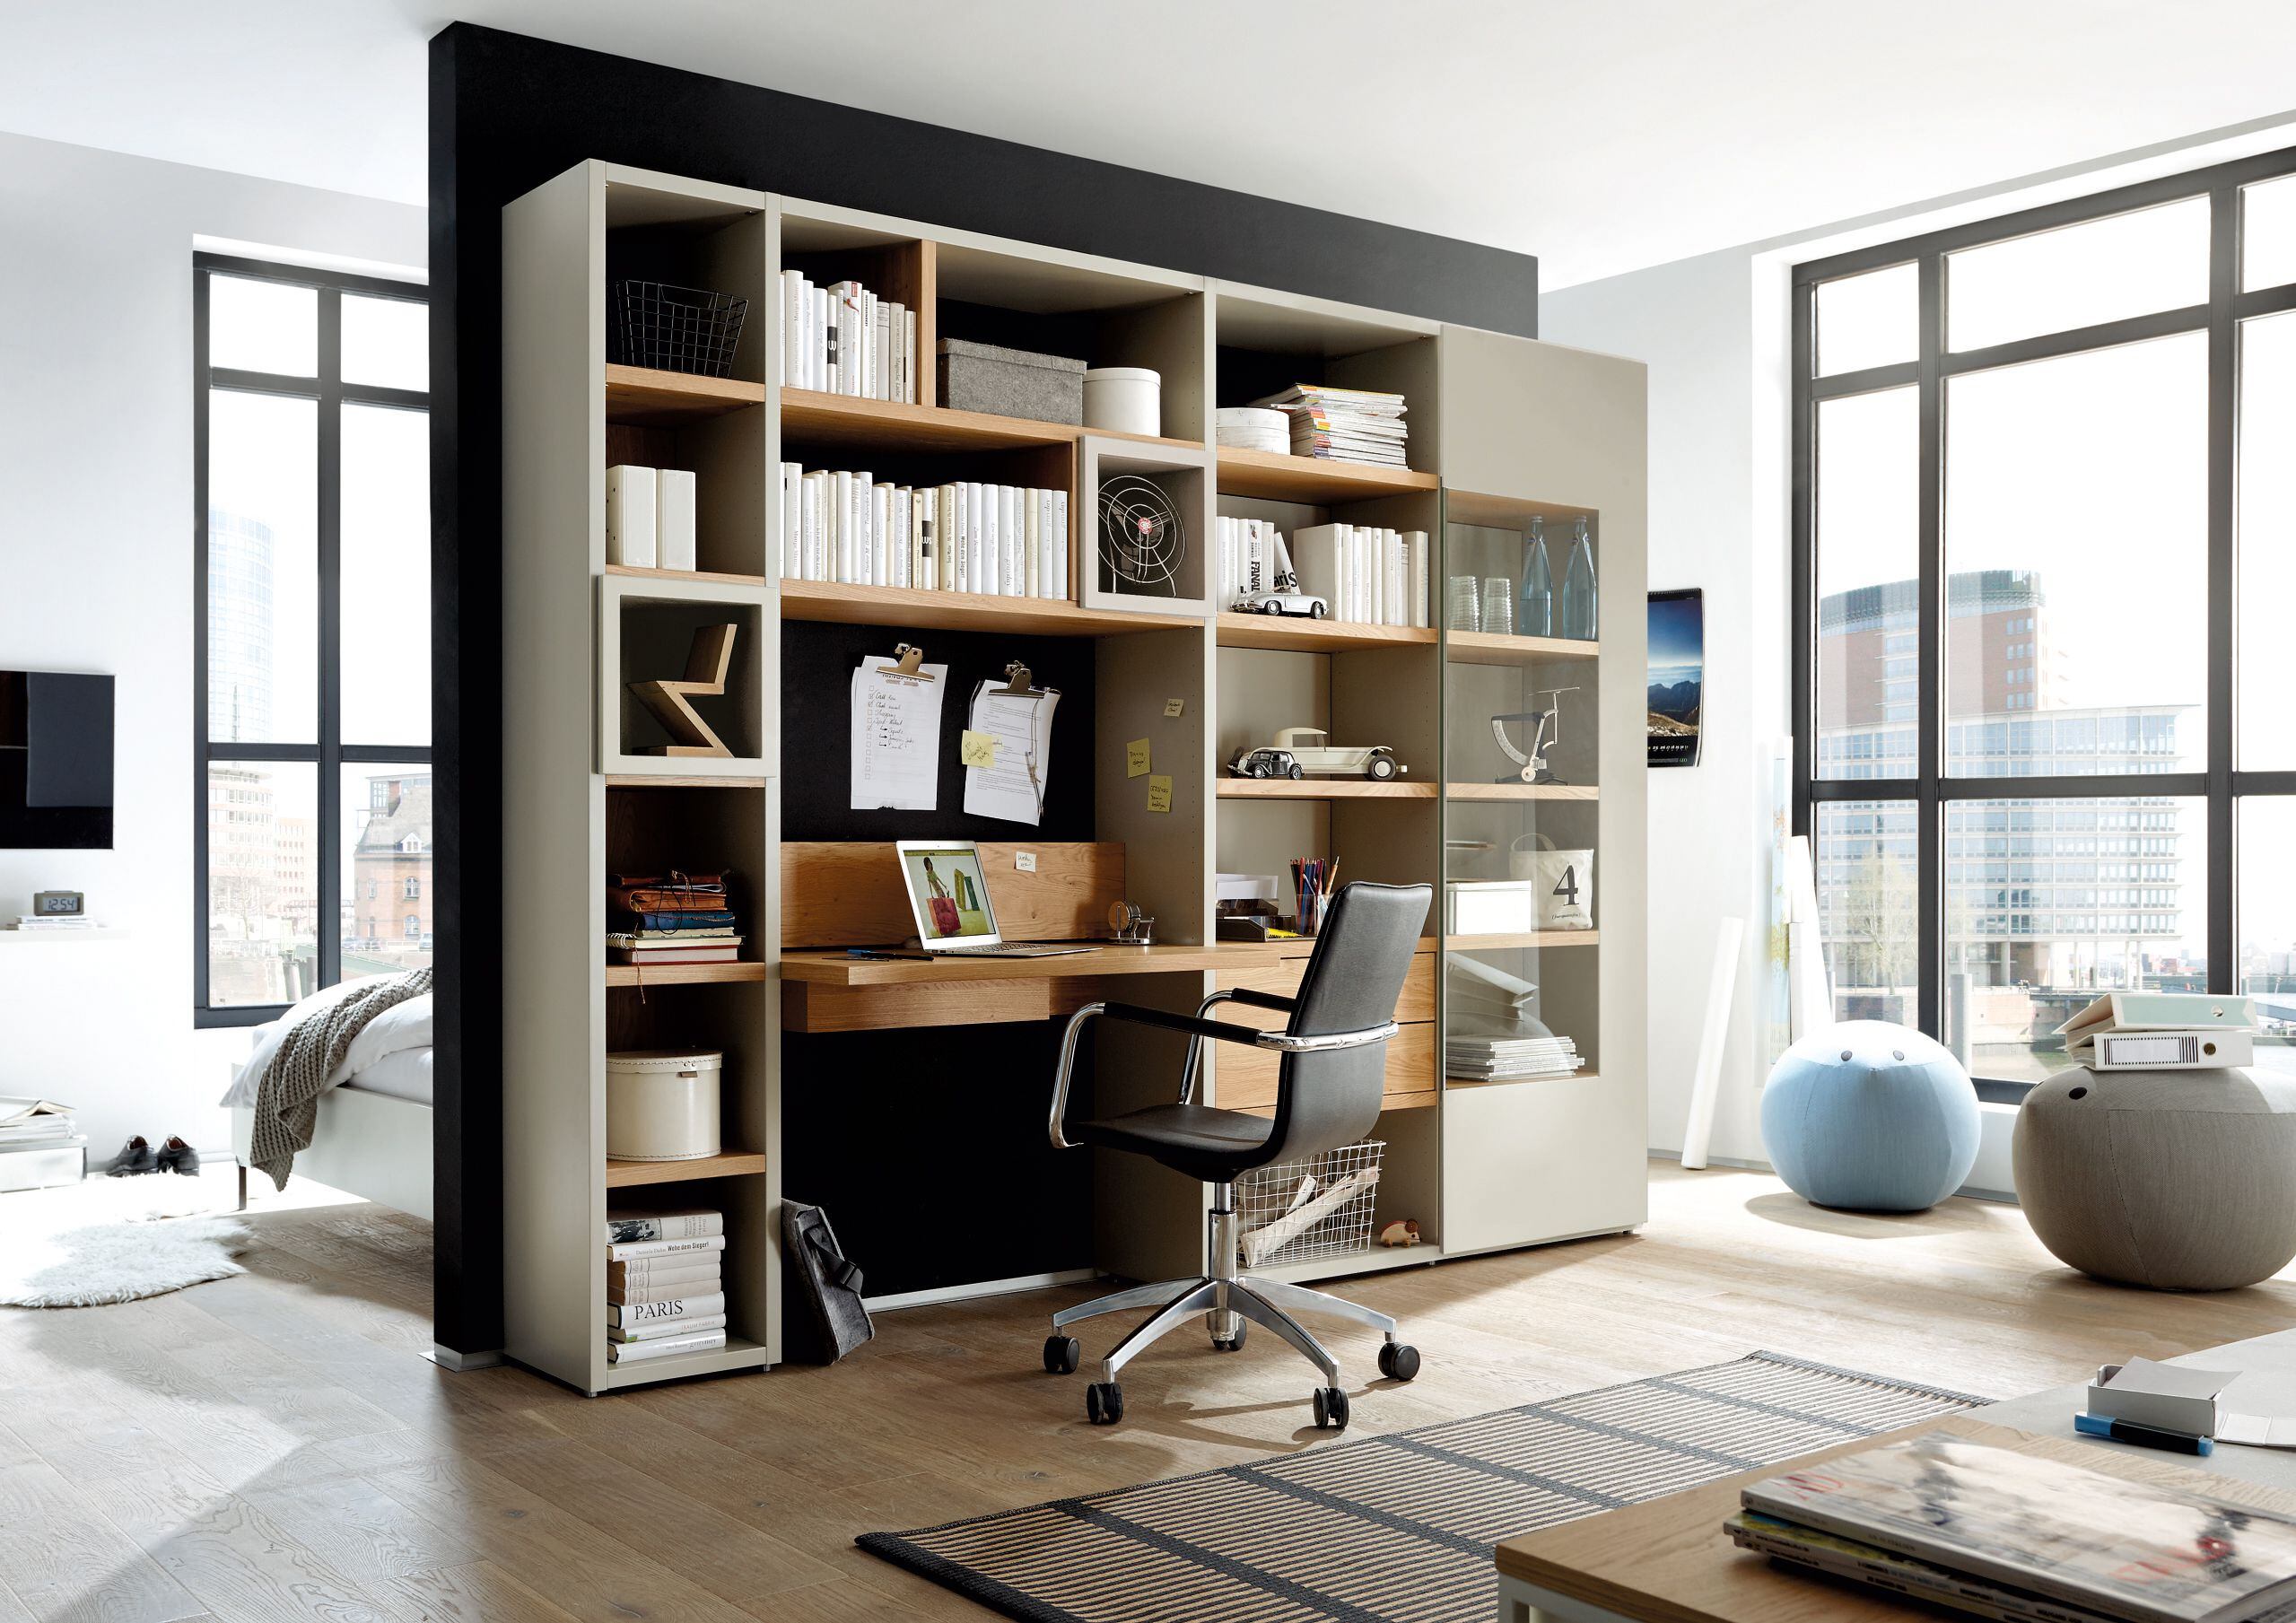 Una estantería con escritorio integrado es una opción para homeoffice que ahorra espacio en un monoambiente. Foto: Hülsta/VDM/DPA.